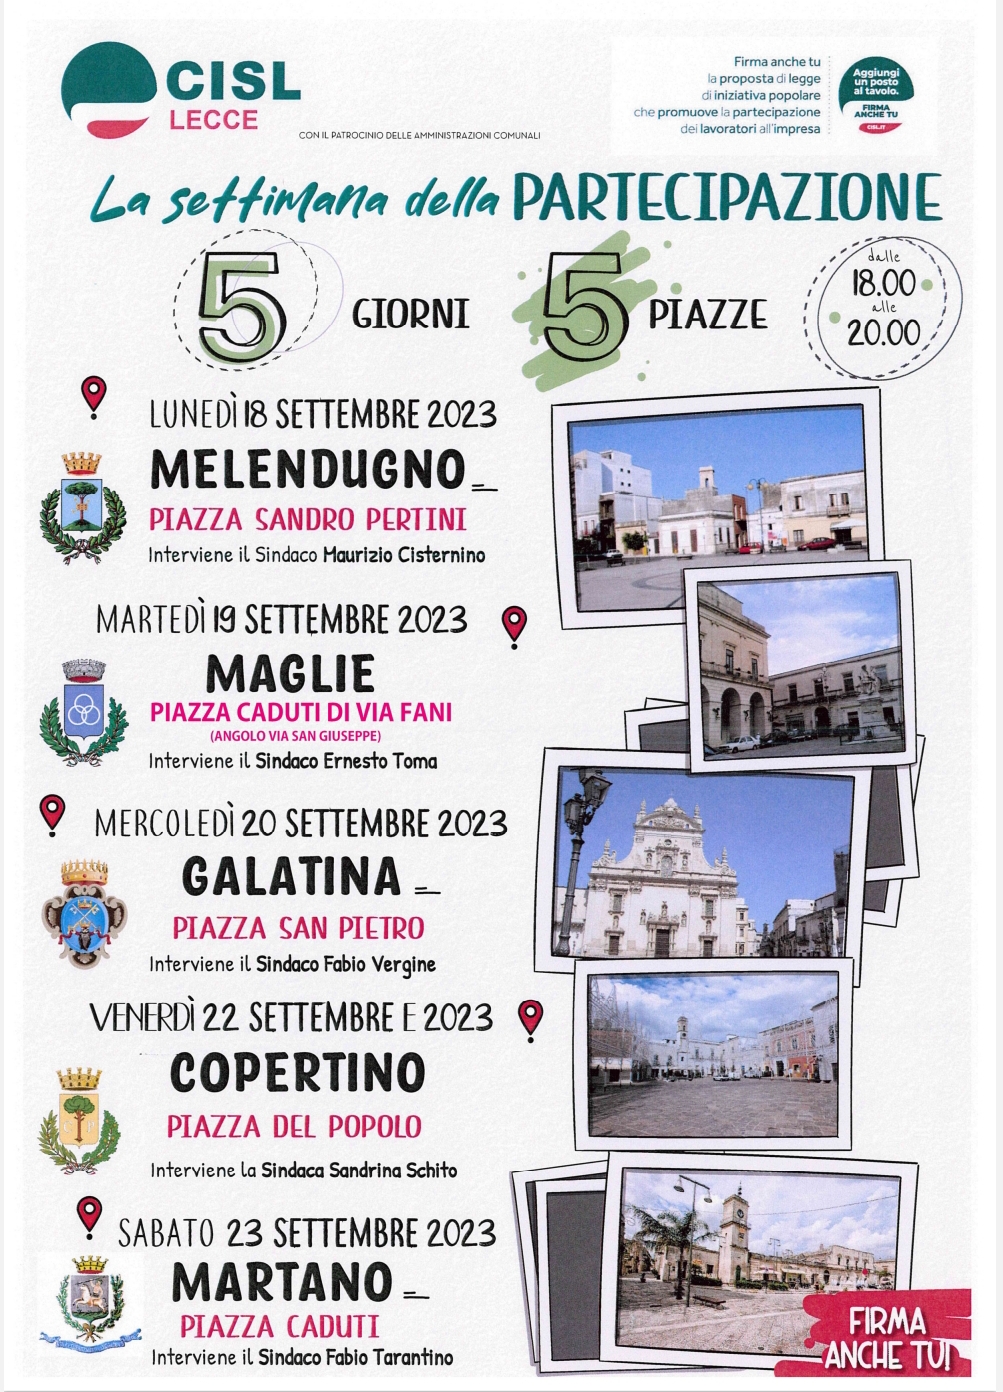 La settimana della Partecipazione, 5 giorni in 5 piazze: Comunicato stampa di presentazione dell’iniziativa della Cisl di Lecce